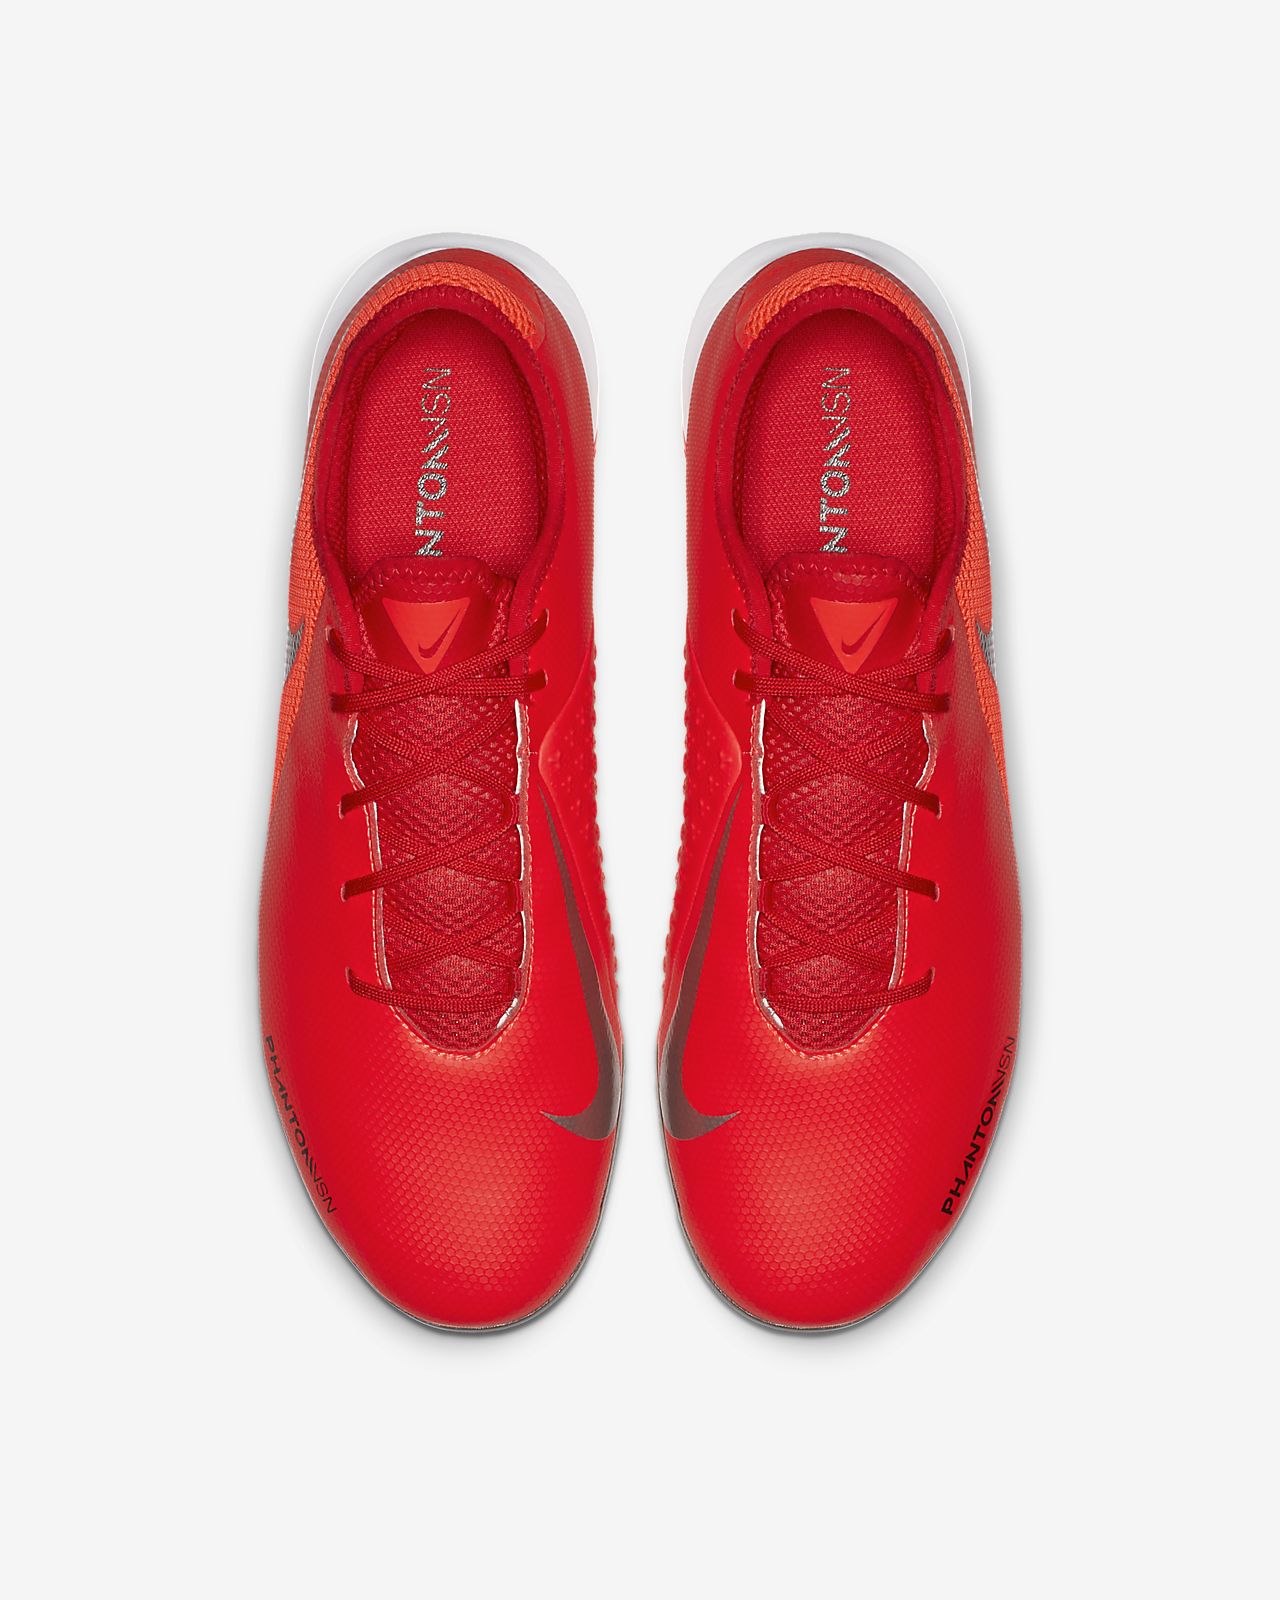 Jual Nike Phantom Vsn Murah Harga Terbaru 2020